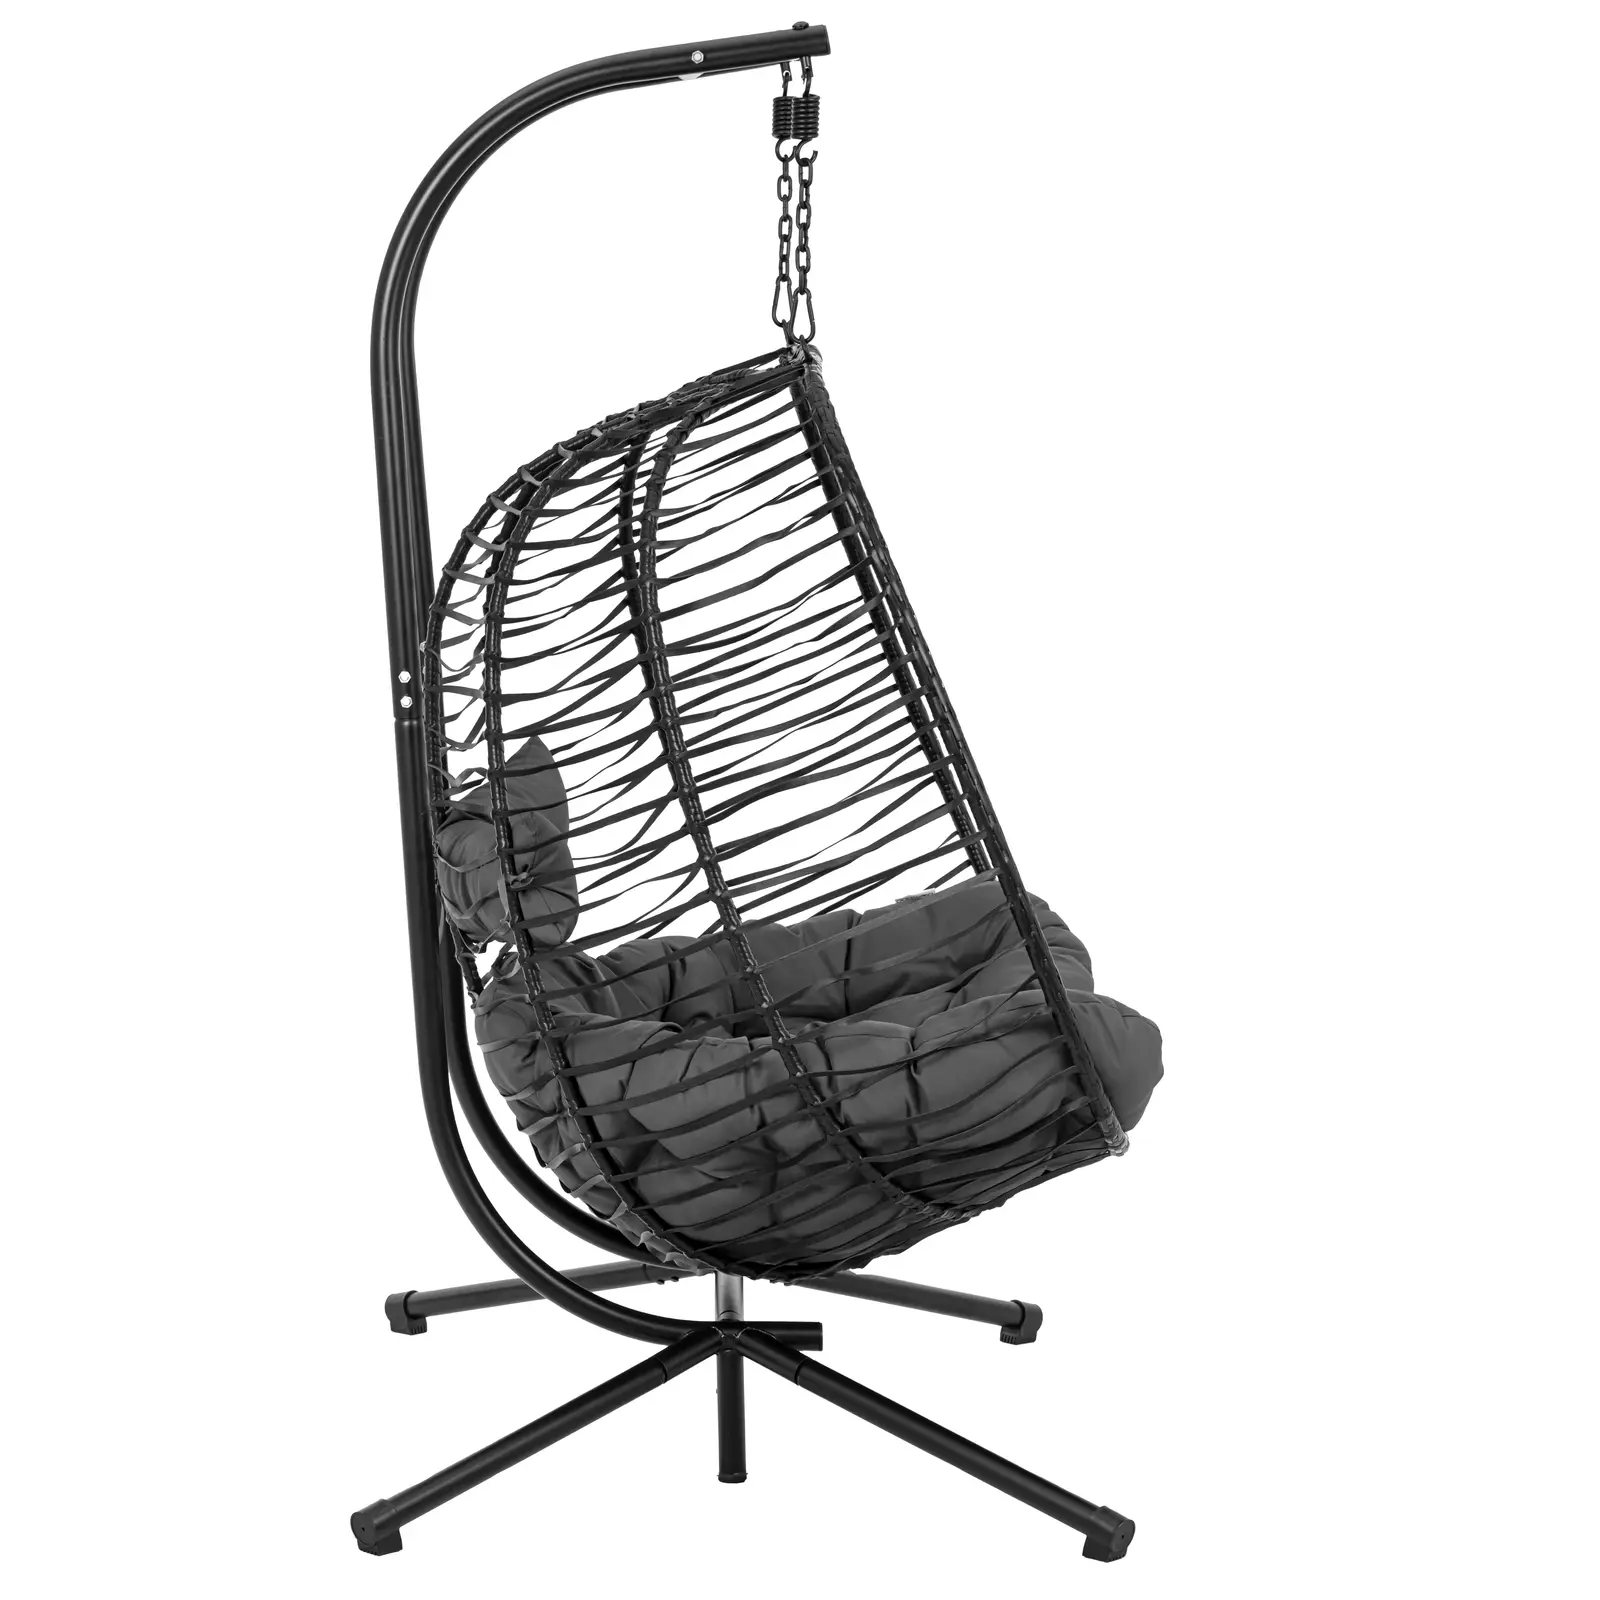 Buiten hangstoel met frame - voor twee personen - opklapbare zitting - zwart/grijs